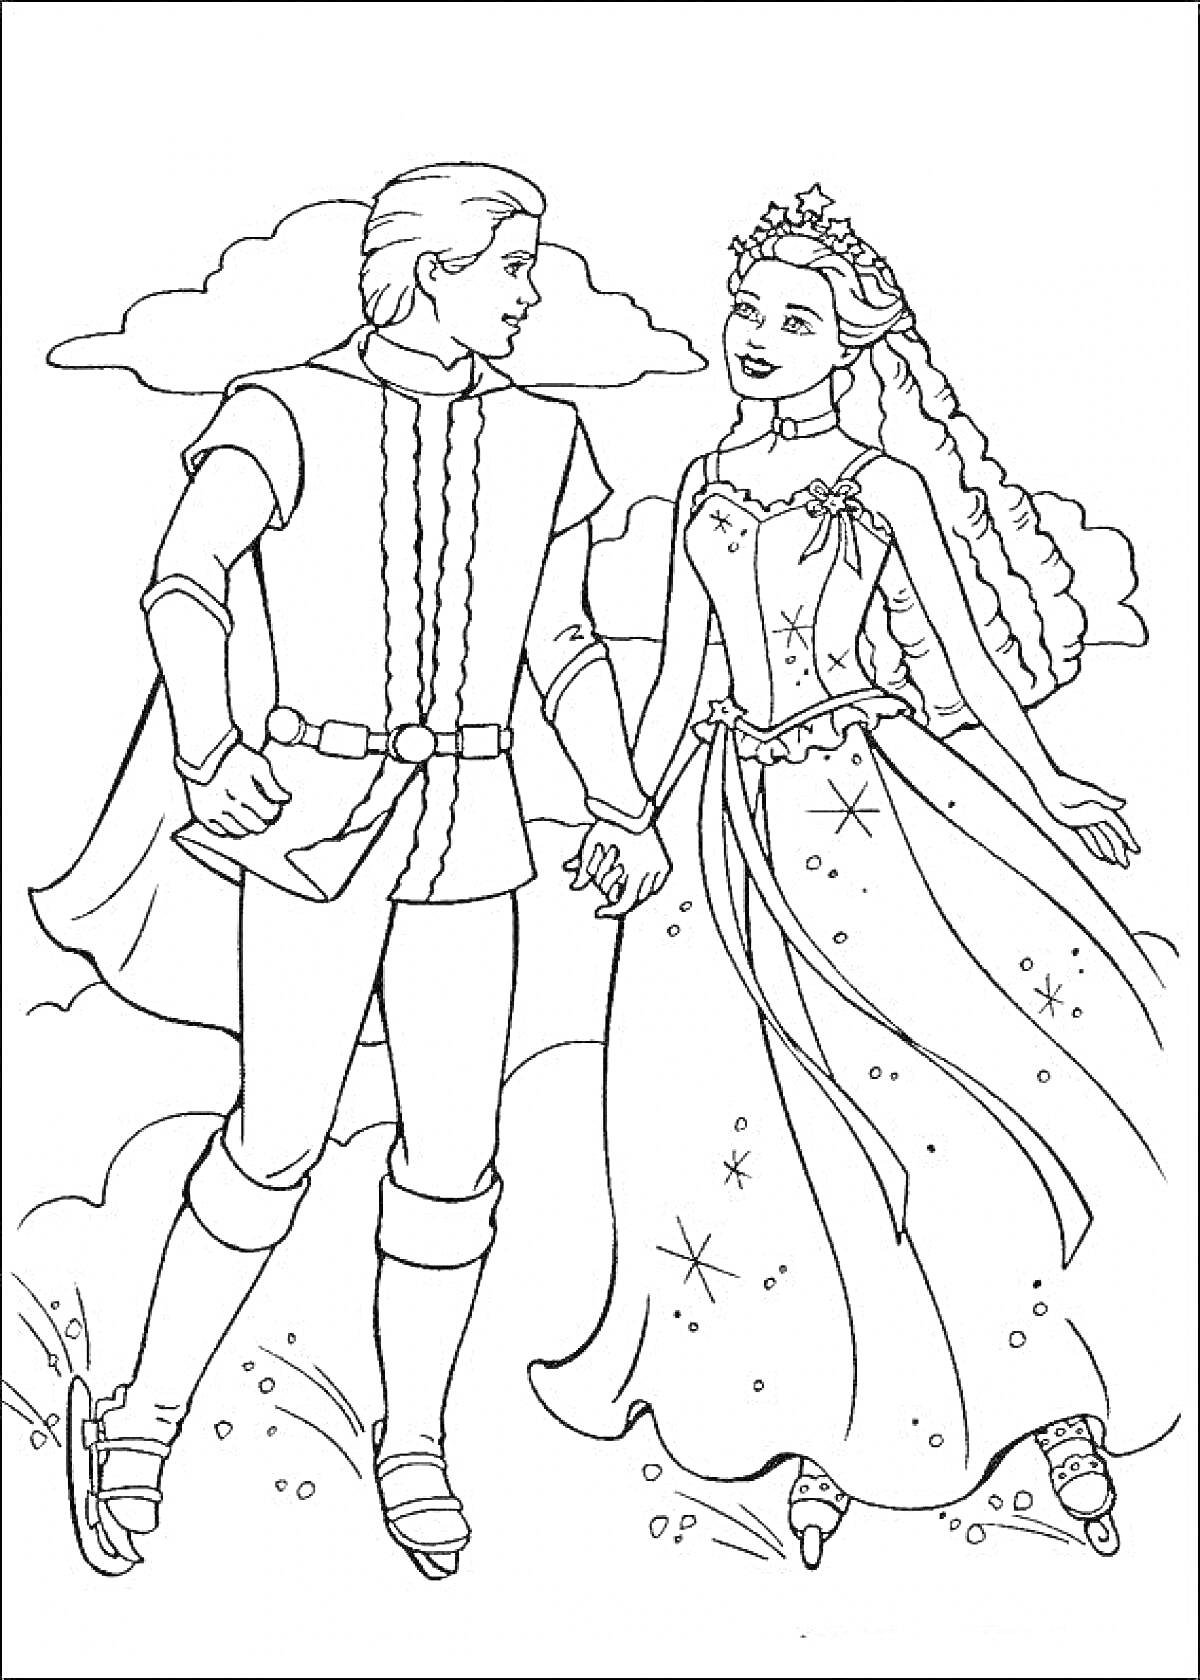 Раскраска Барби и Кен в нарядных костюмах на фоне облаков, держась за руки